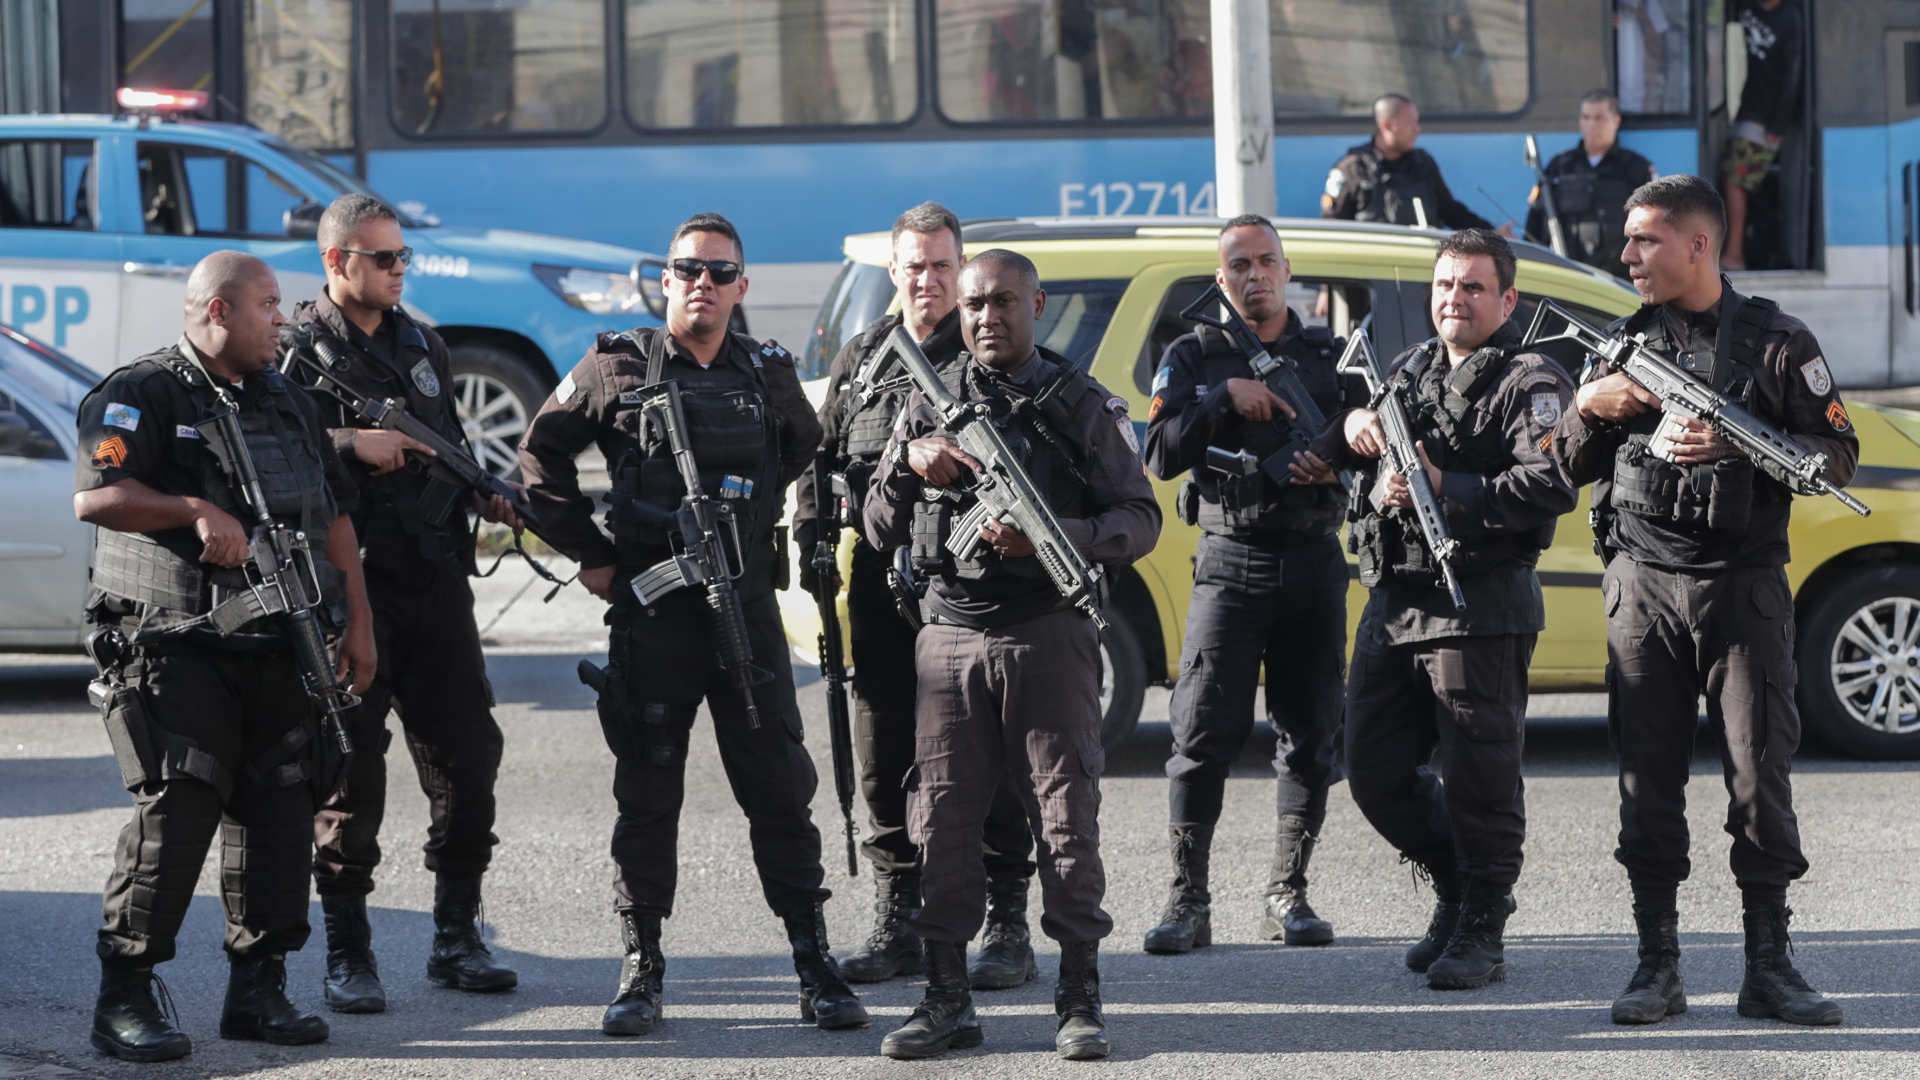 Polizisten sichern bei einem Einsatz schwer bewaffnet die Favela Vila Cruzeiro. | EPA